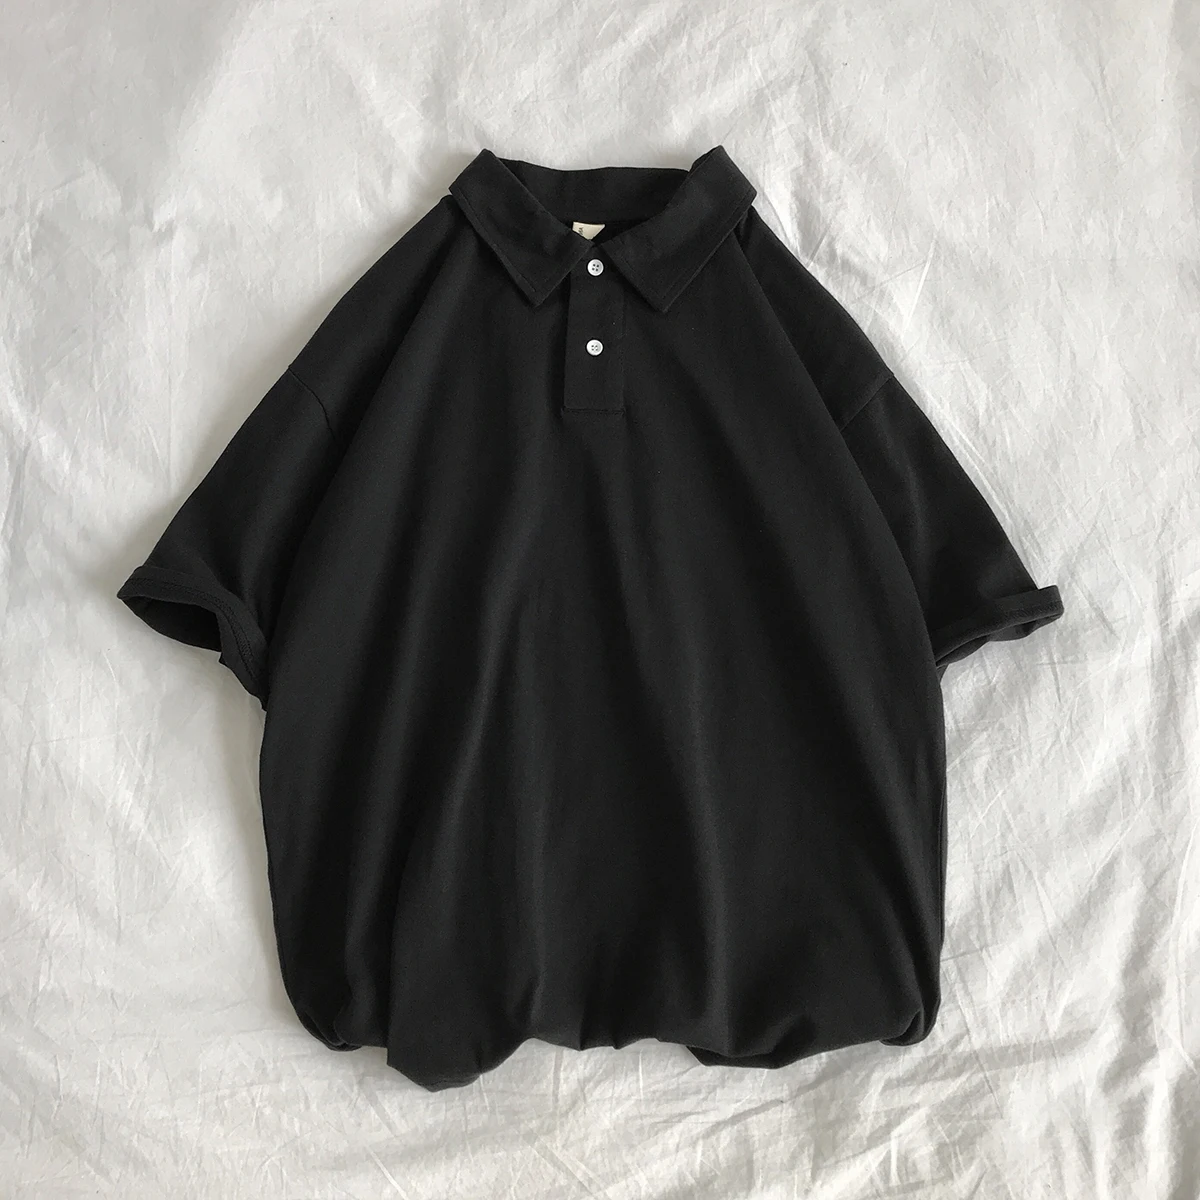 Для мужчин Поло рубашка Camisa Masculina рубашки для мальчиков, хлопковая футболка с коротким рукавом самых лучших брендов, Майки летние спортивные Майки golftennis Blusas топы черного цвета - Цвет: Черный